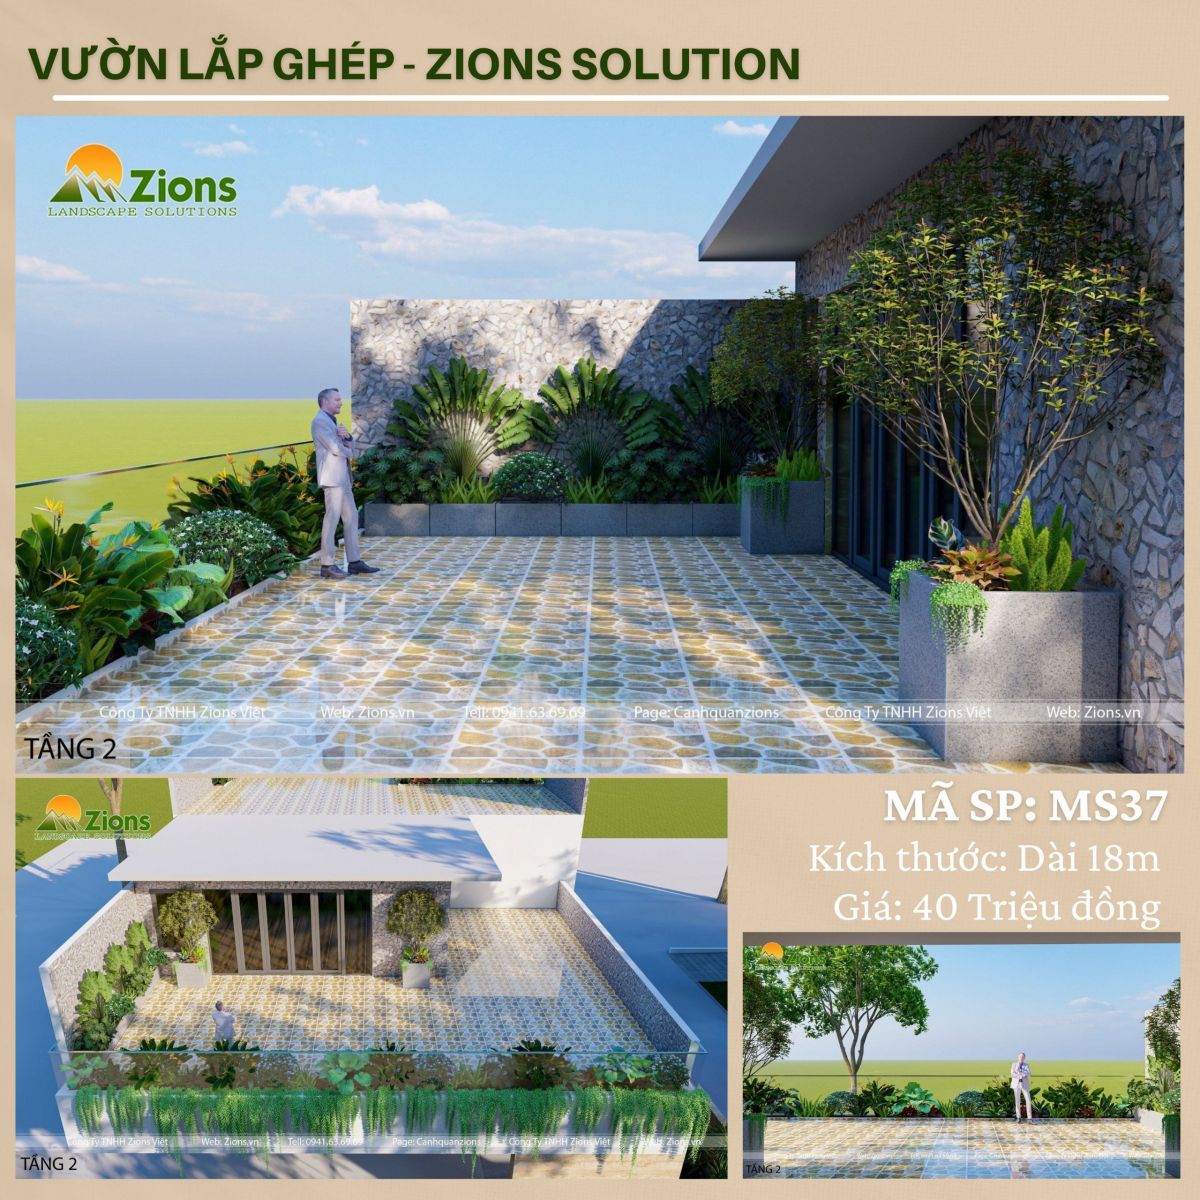 Mẫu vườn lắp ghép - thiết kế tiểu cảnh sân vườn zions